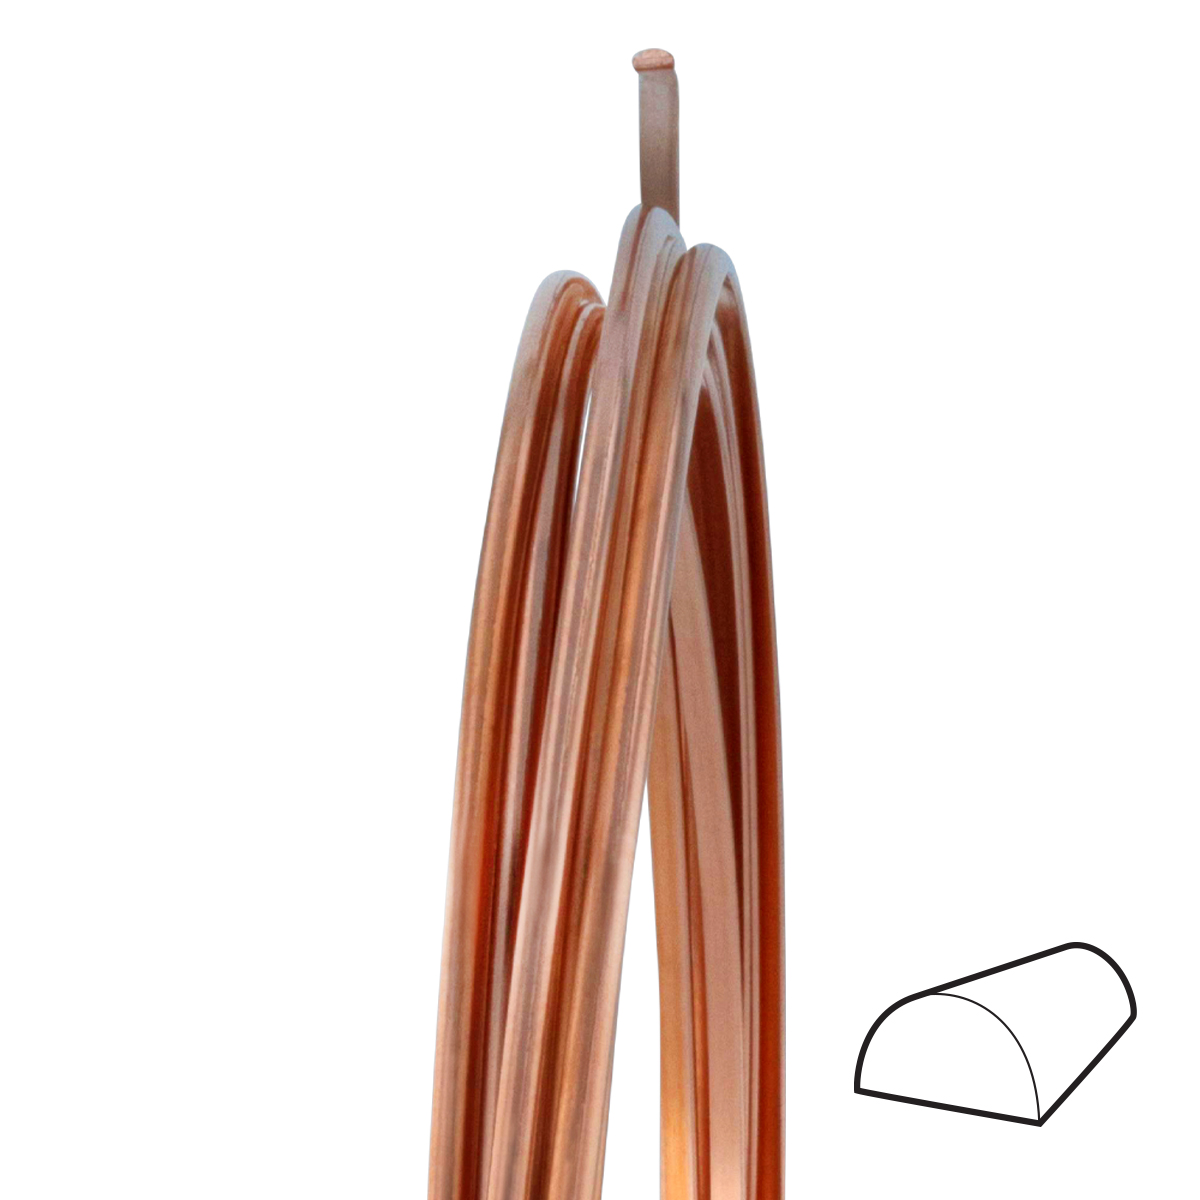 6 Gauge Half Round Dead Soft Copper Wire: Wire Jewelry, Wire Wrap  Tutorials